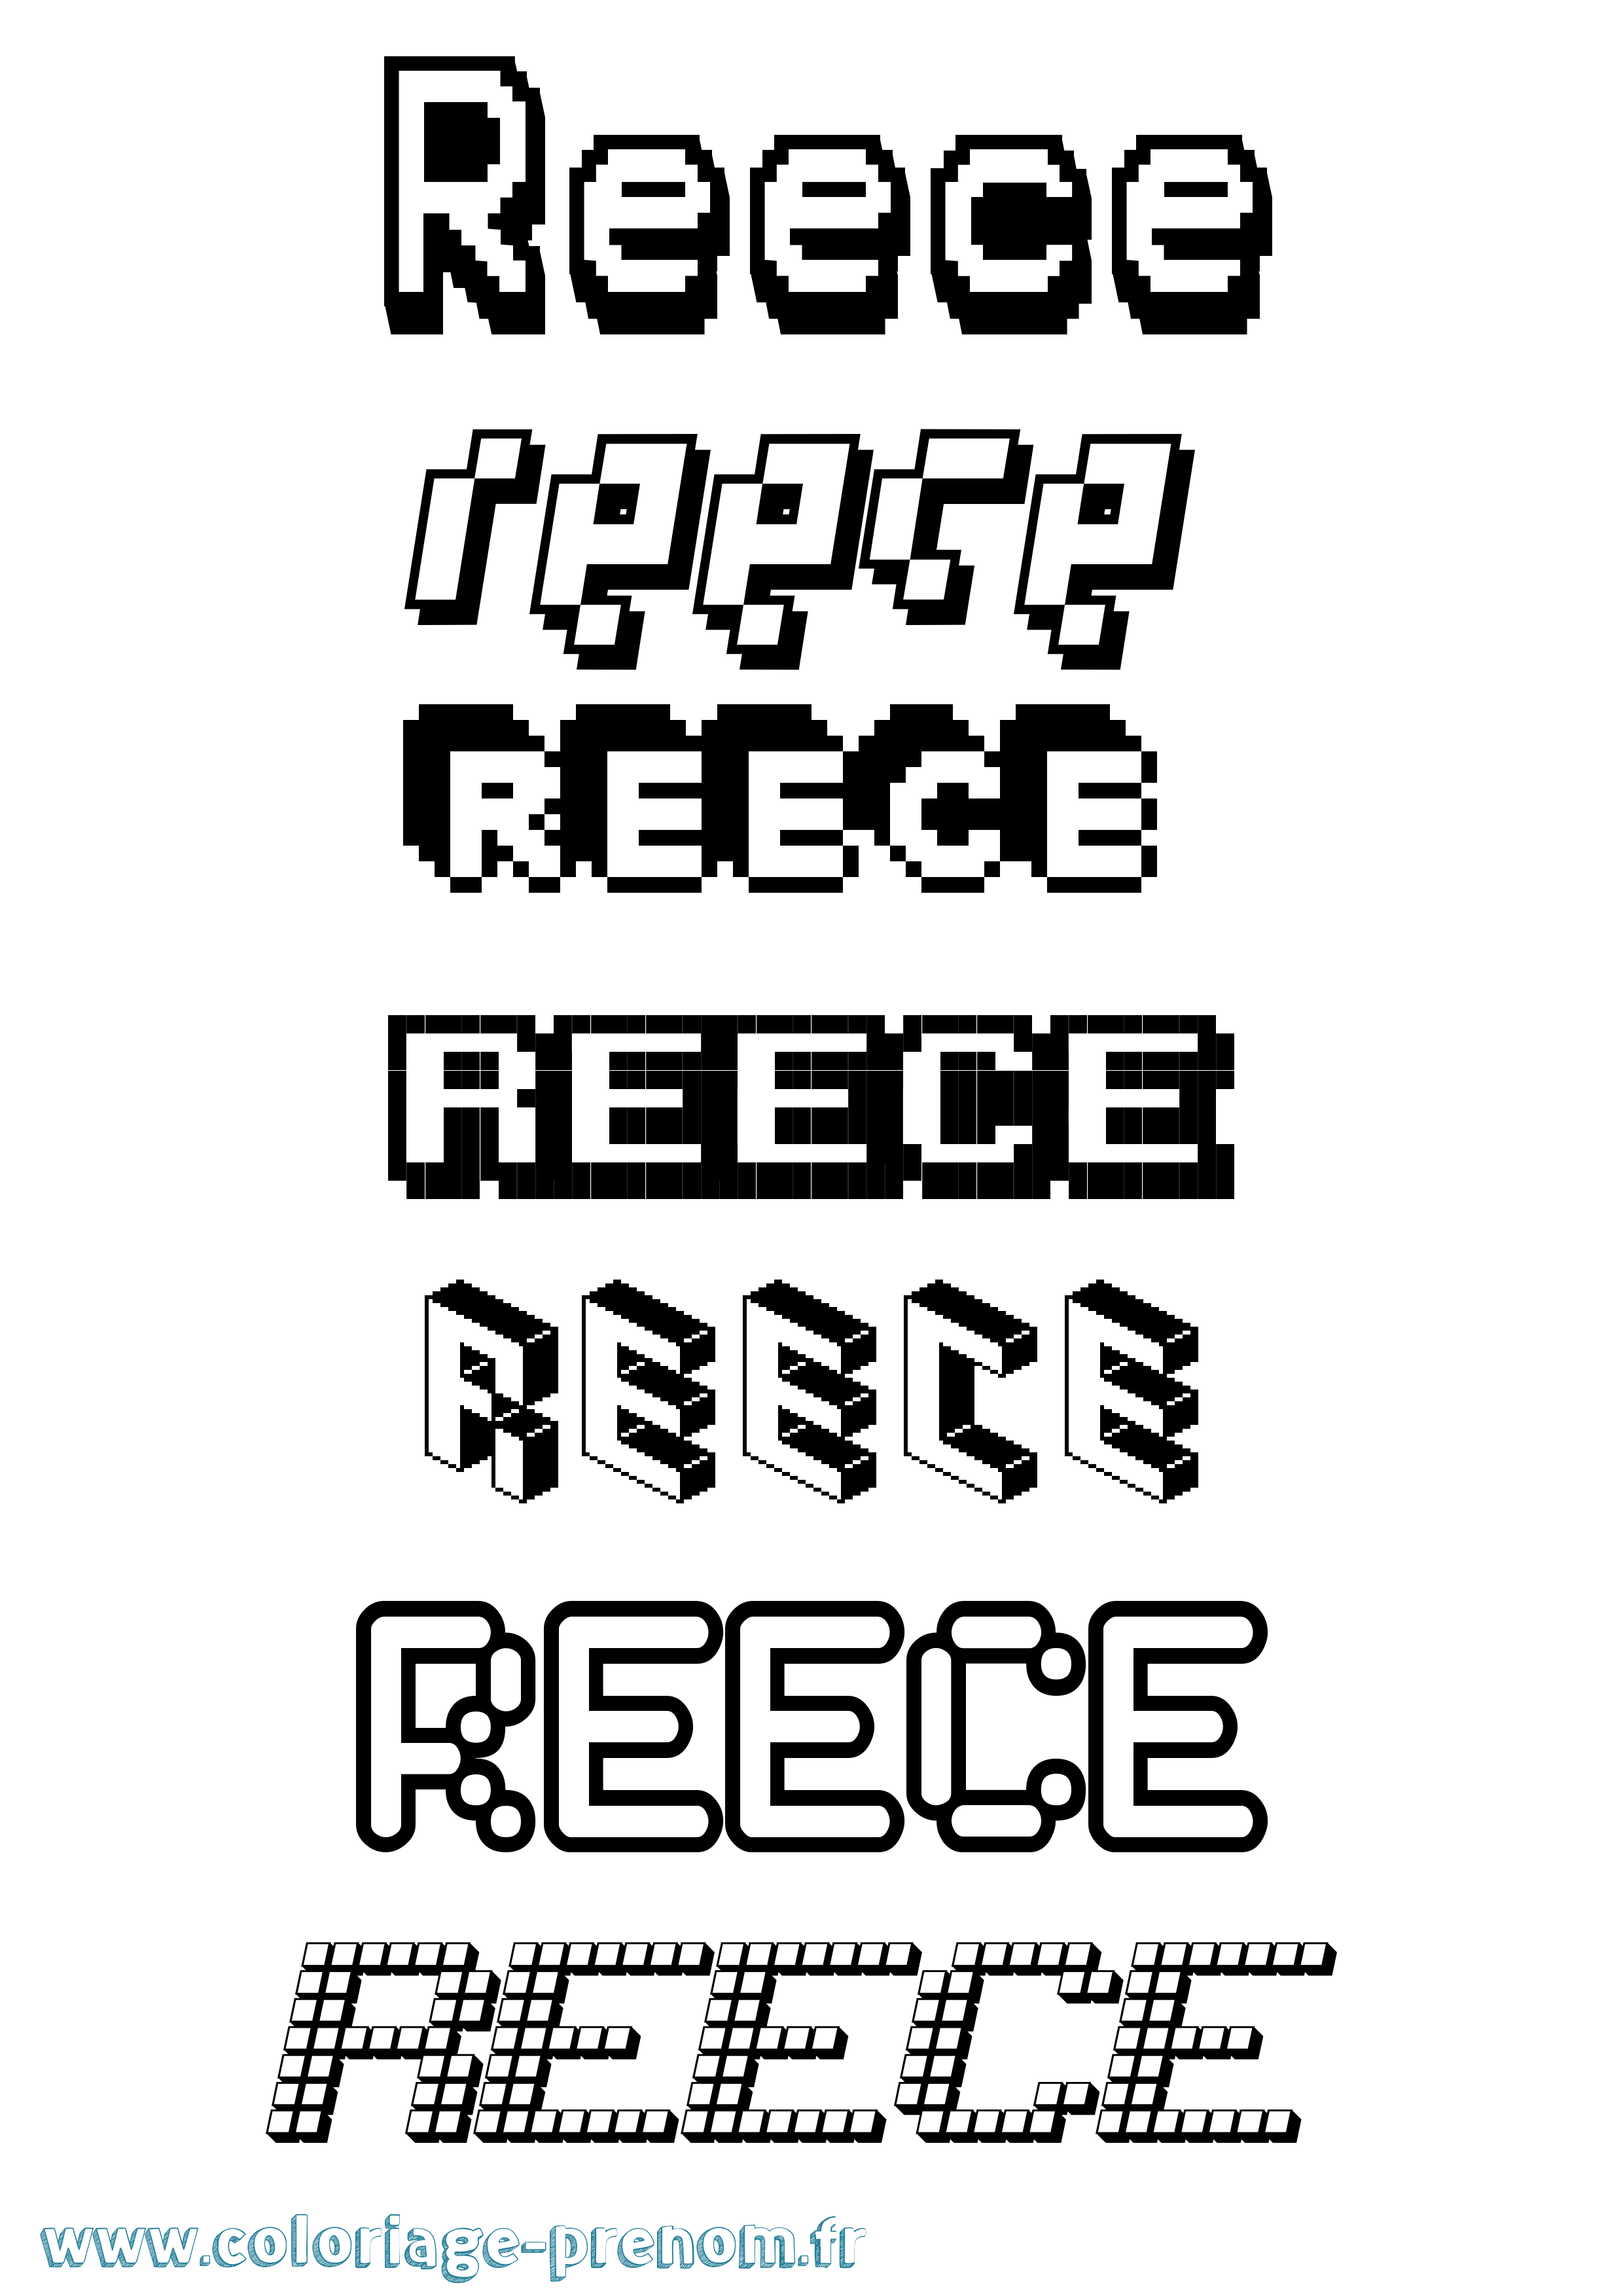 Coloriage prénom Reece Pixel